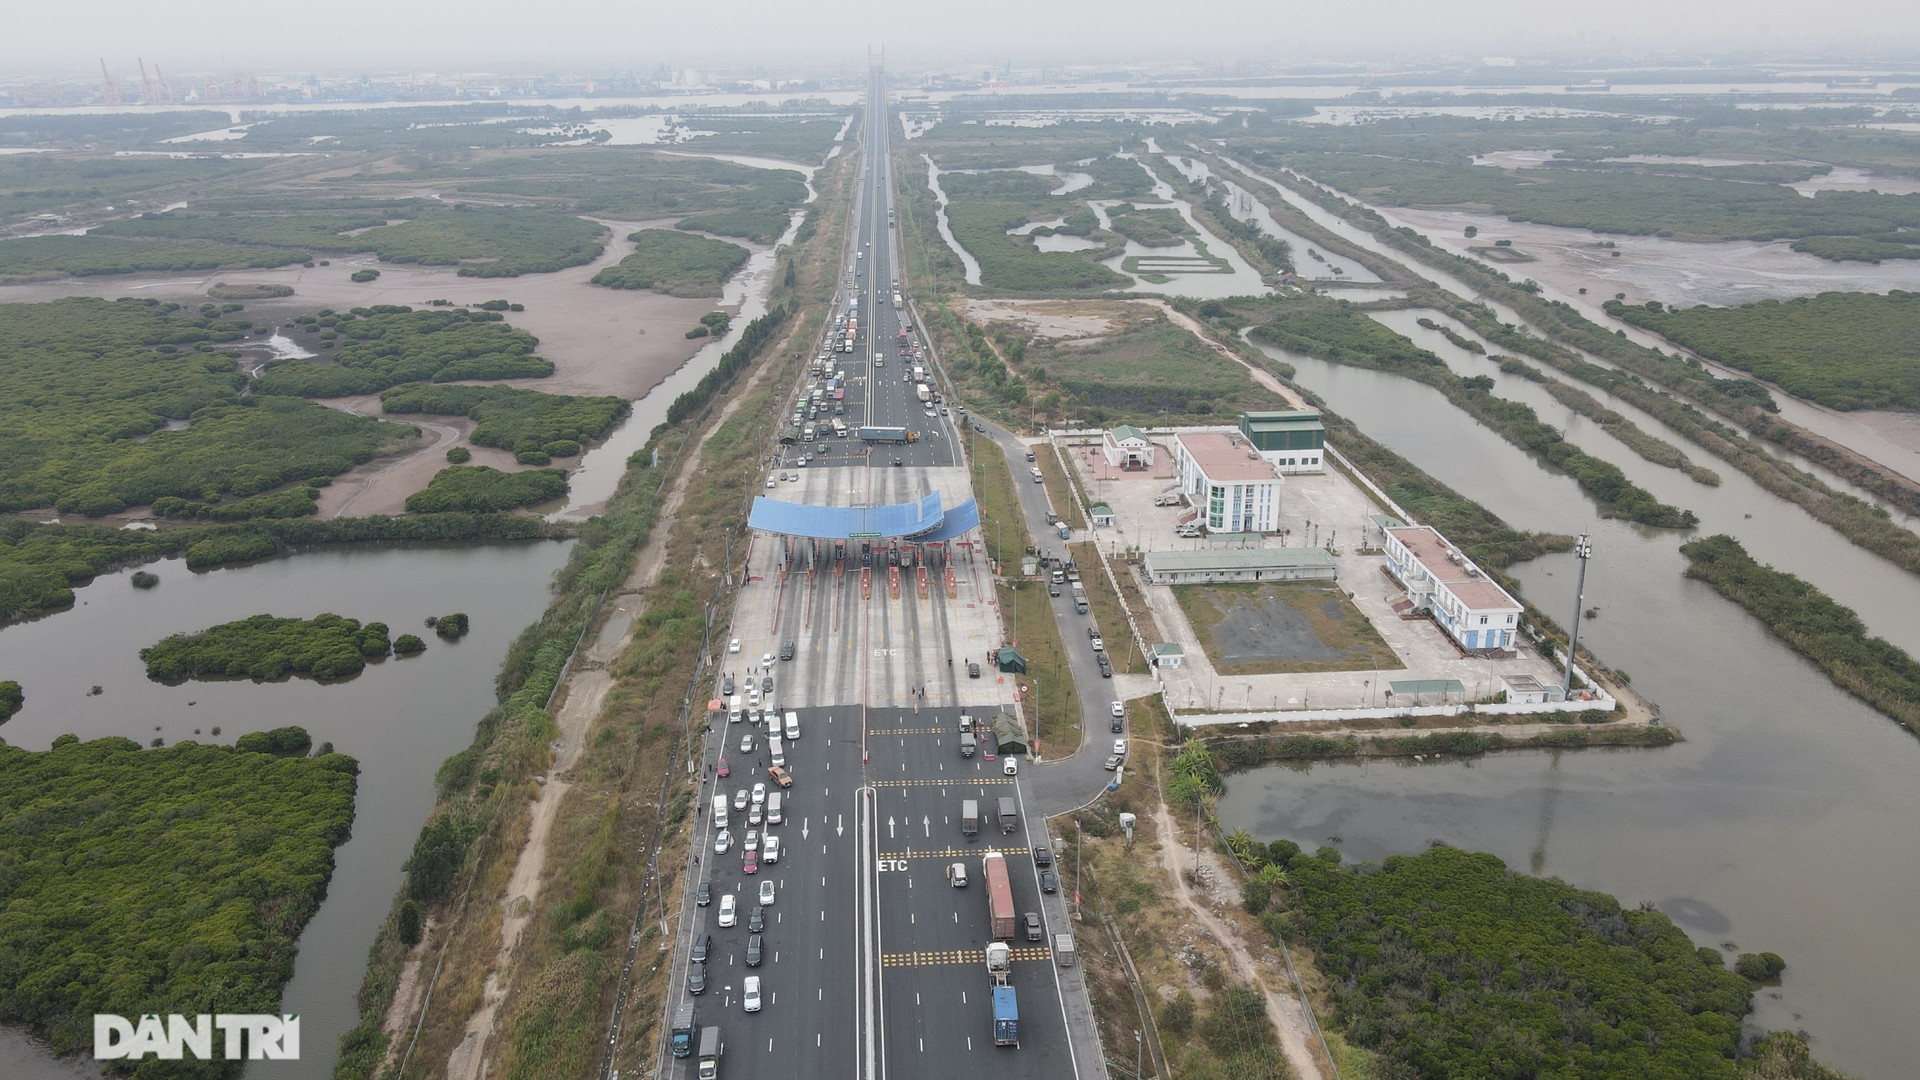 Trước diễn biến phức tạp về tình hình dịch bệnh, tỉnh Quảng Ninh đã lập các chốt kiểm soát, tạm dừng hoạt động vận tải khách đường bộ, đường thủy trên địa bàn tỉnh.